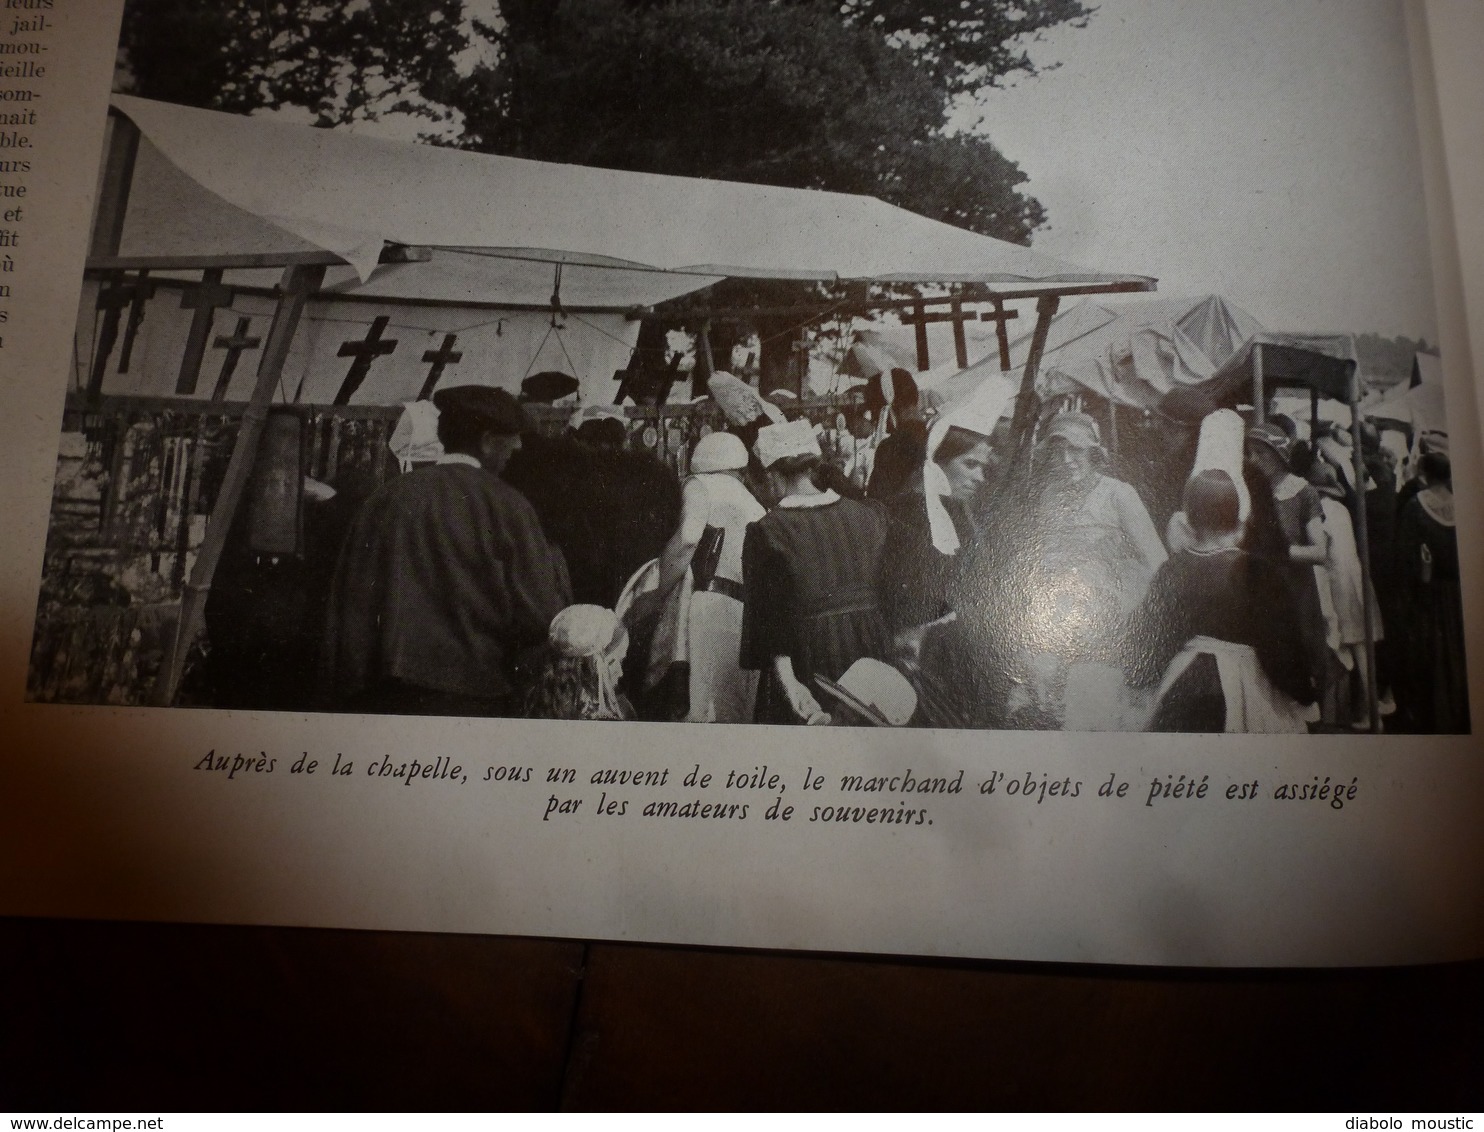 1940 L'ILLUSTRATION :Pardon breton (Ste-Anne-la-Palue,Folgoat,Quimper);Hotel Sagonne;Joinville; Odyssée Orduna;Carol;etc